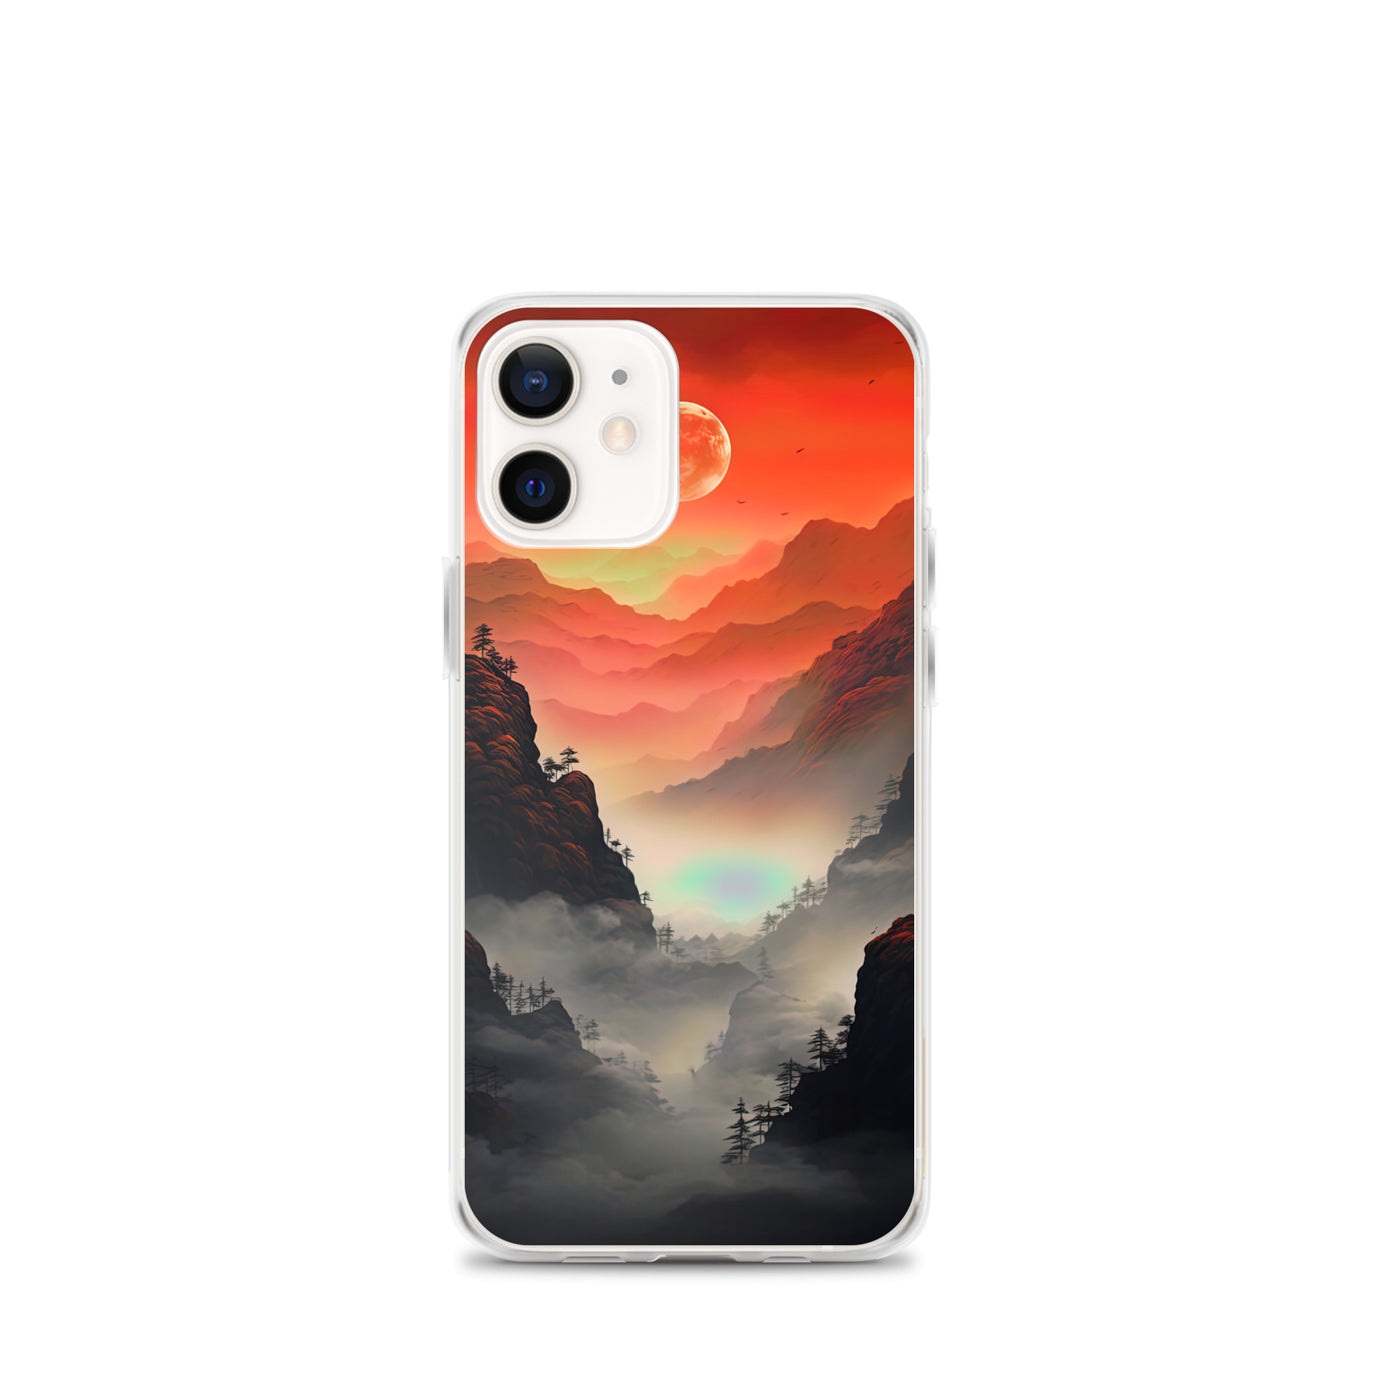 Gebirge, rote Farben und Nebel - Episches Kunstwerk - iPhone Schutzhülle (durchsichtig) berge xxx iPhone 12 mini